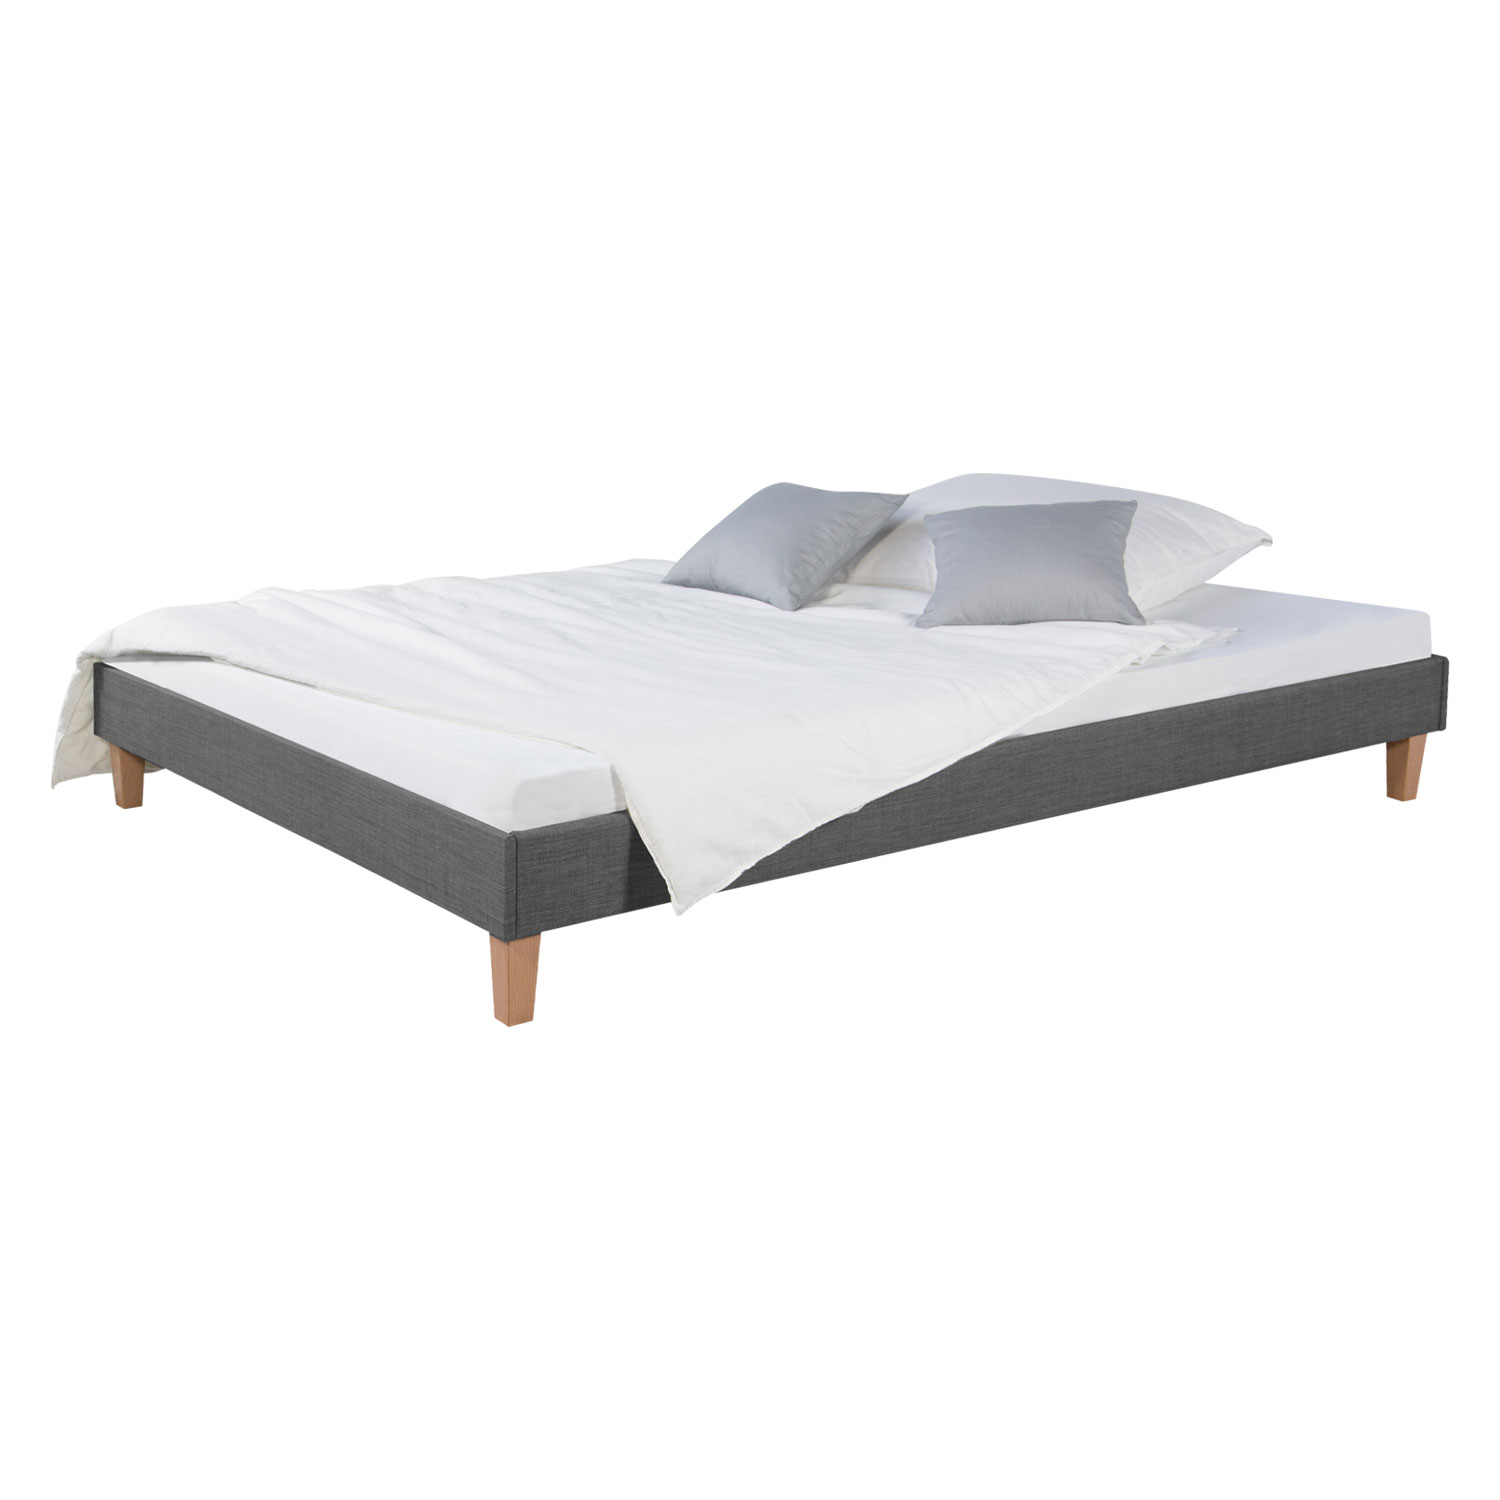 Upholstered Bed 140 x 200 cm Grey Double Bed Futon Bed frame Slatted frame